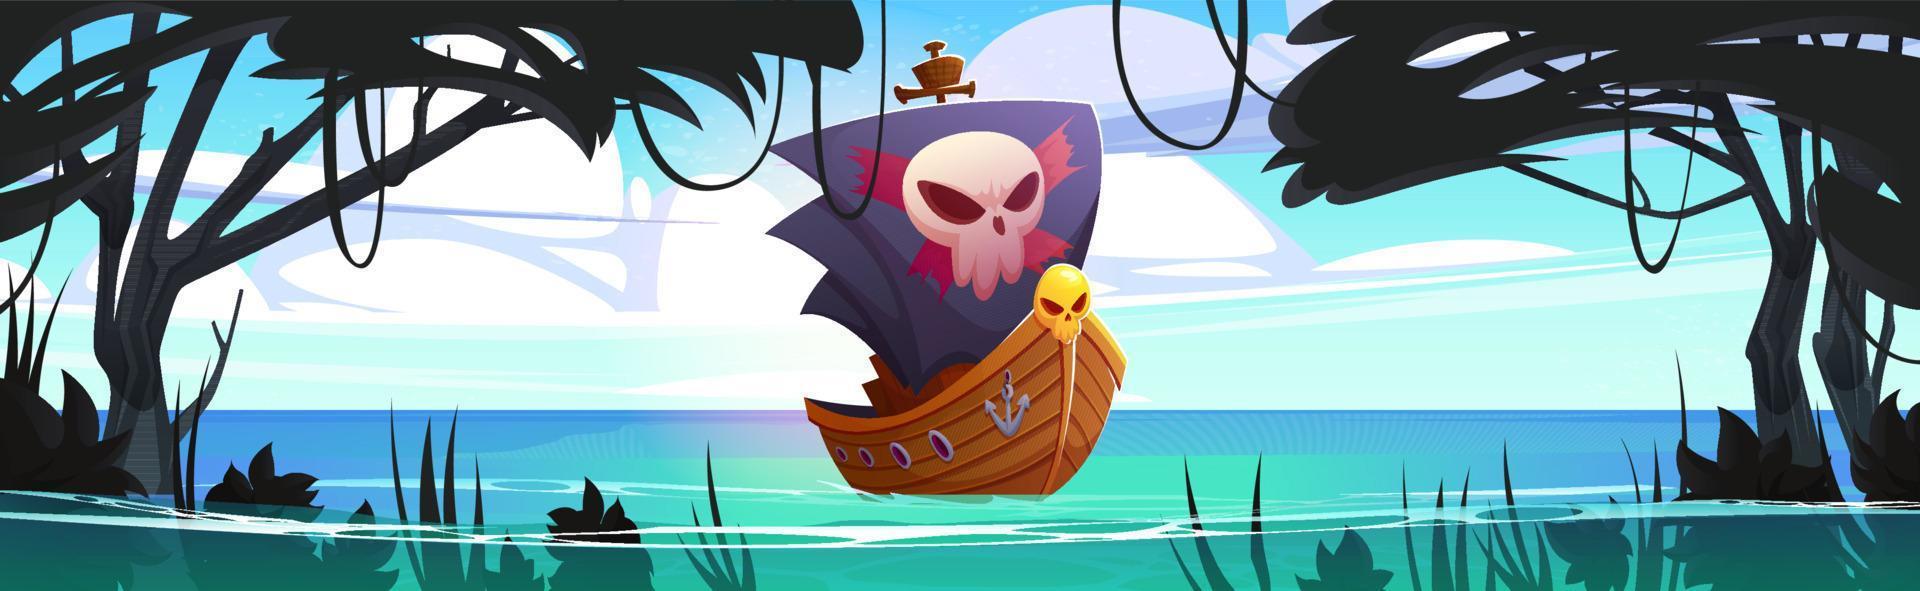 pirata nave nel mare laguna con giungle vettore